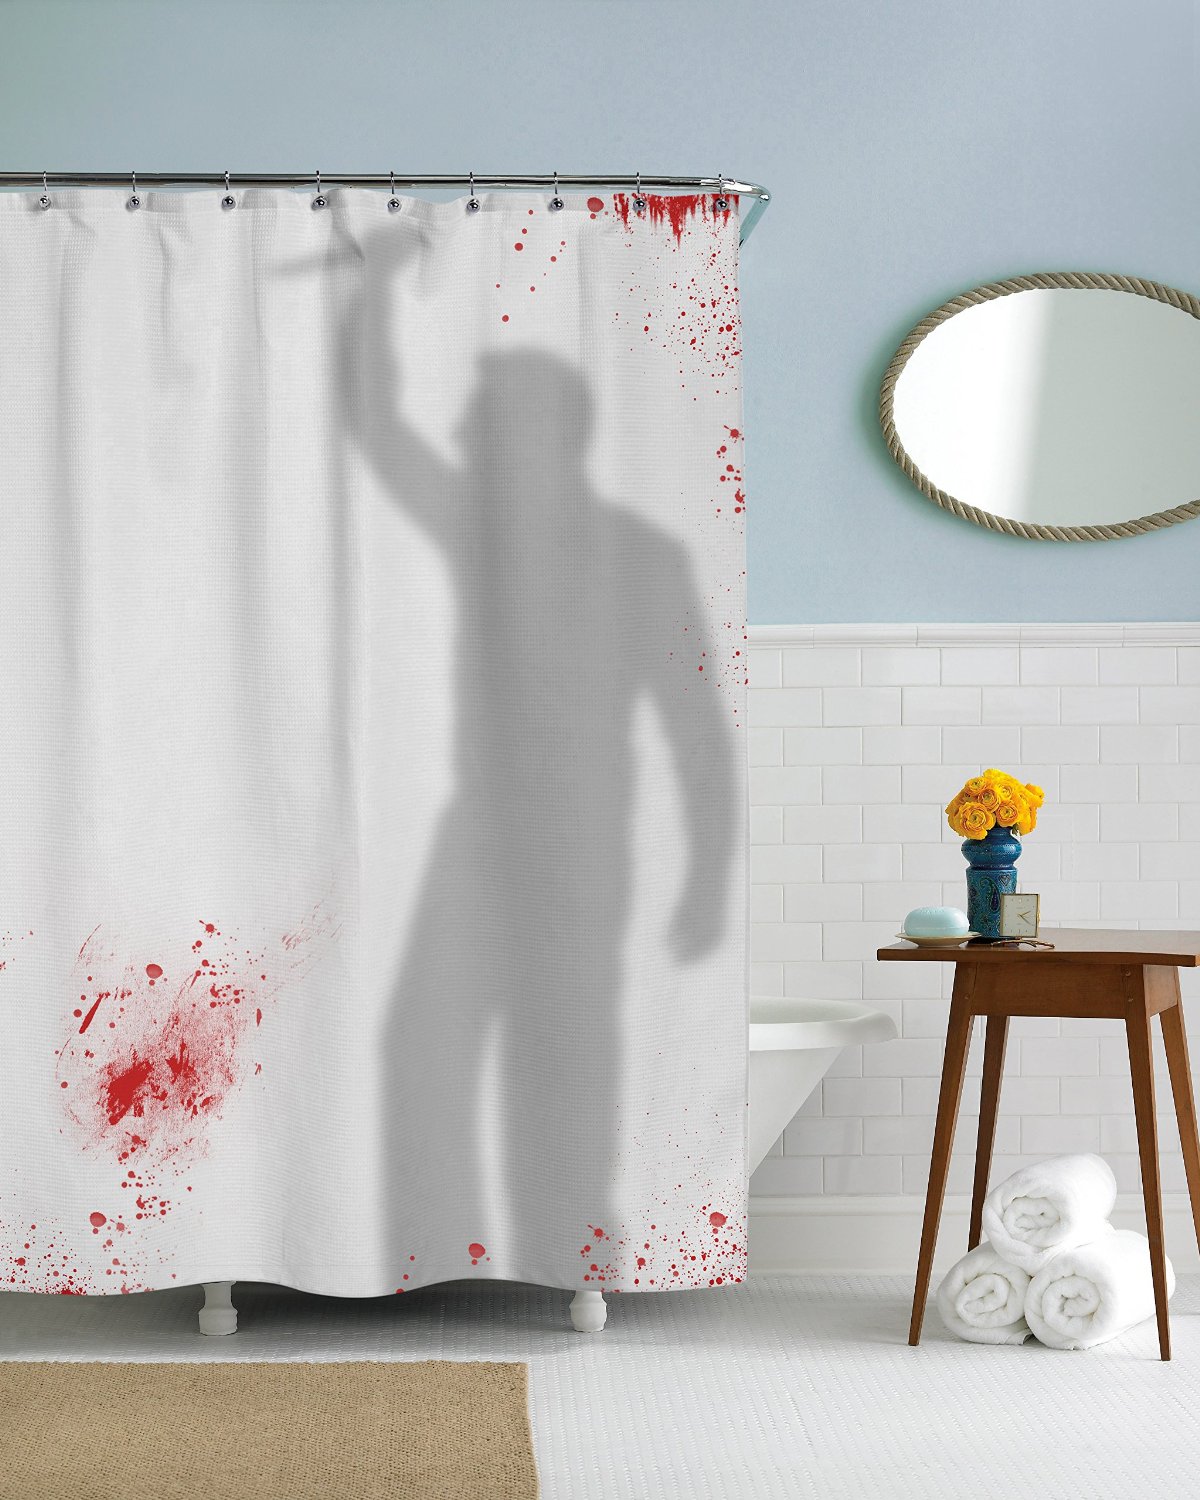 Psycho Killer Shower Curtain Horror Funny